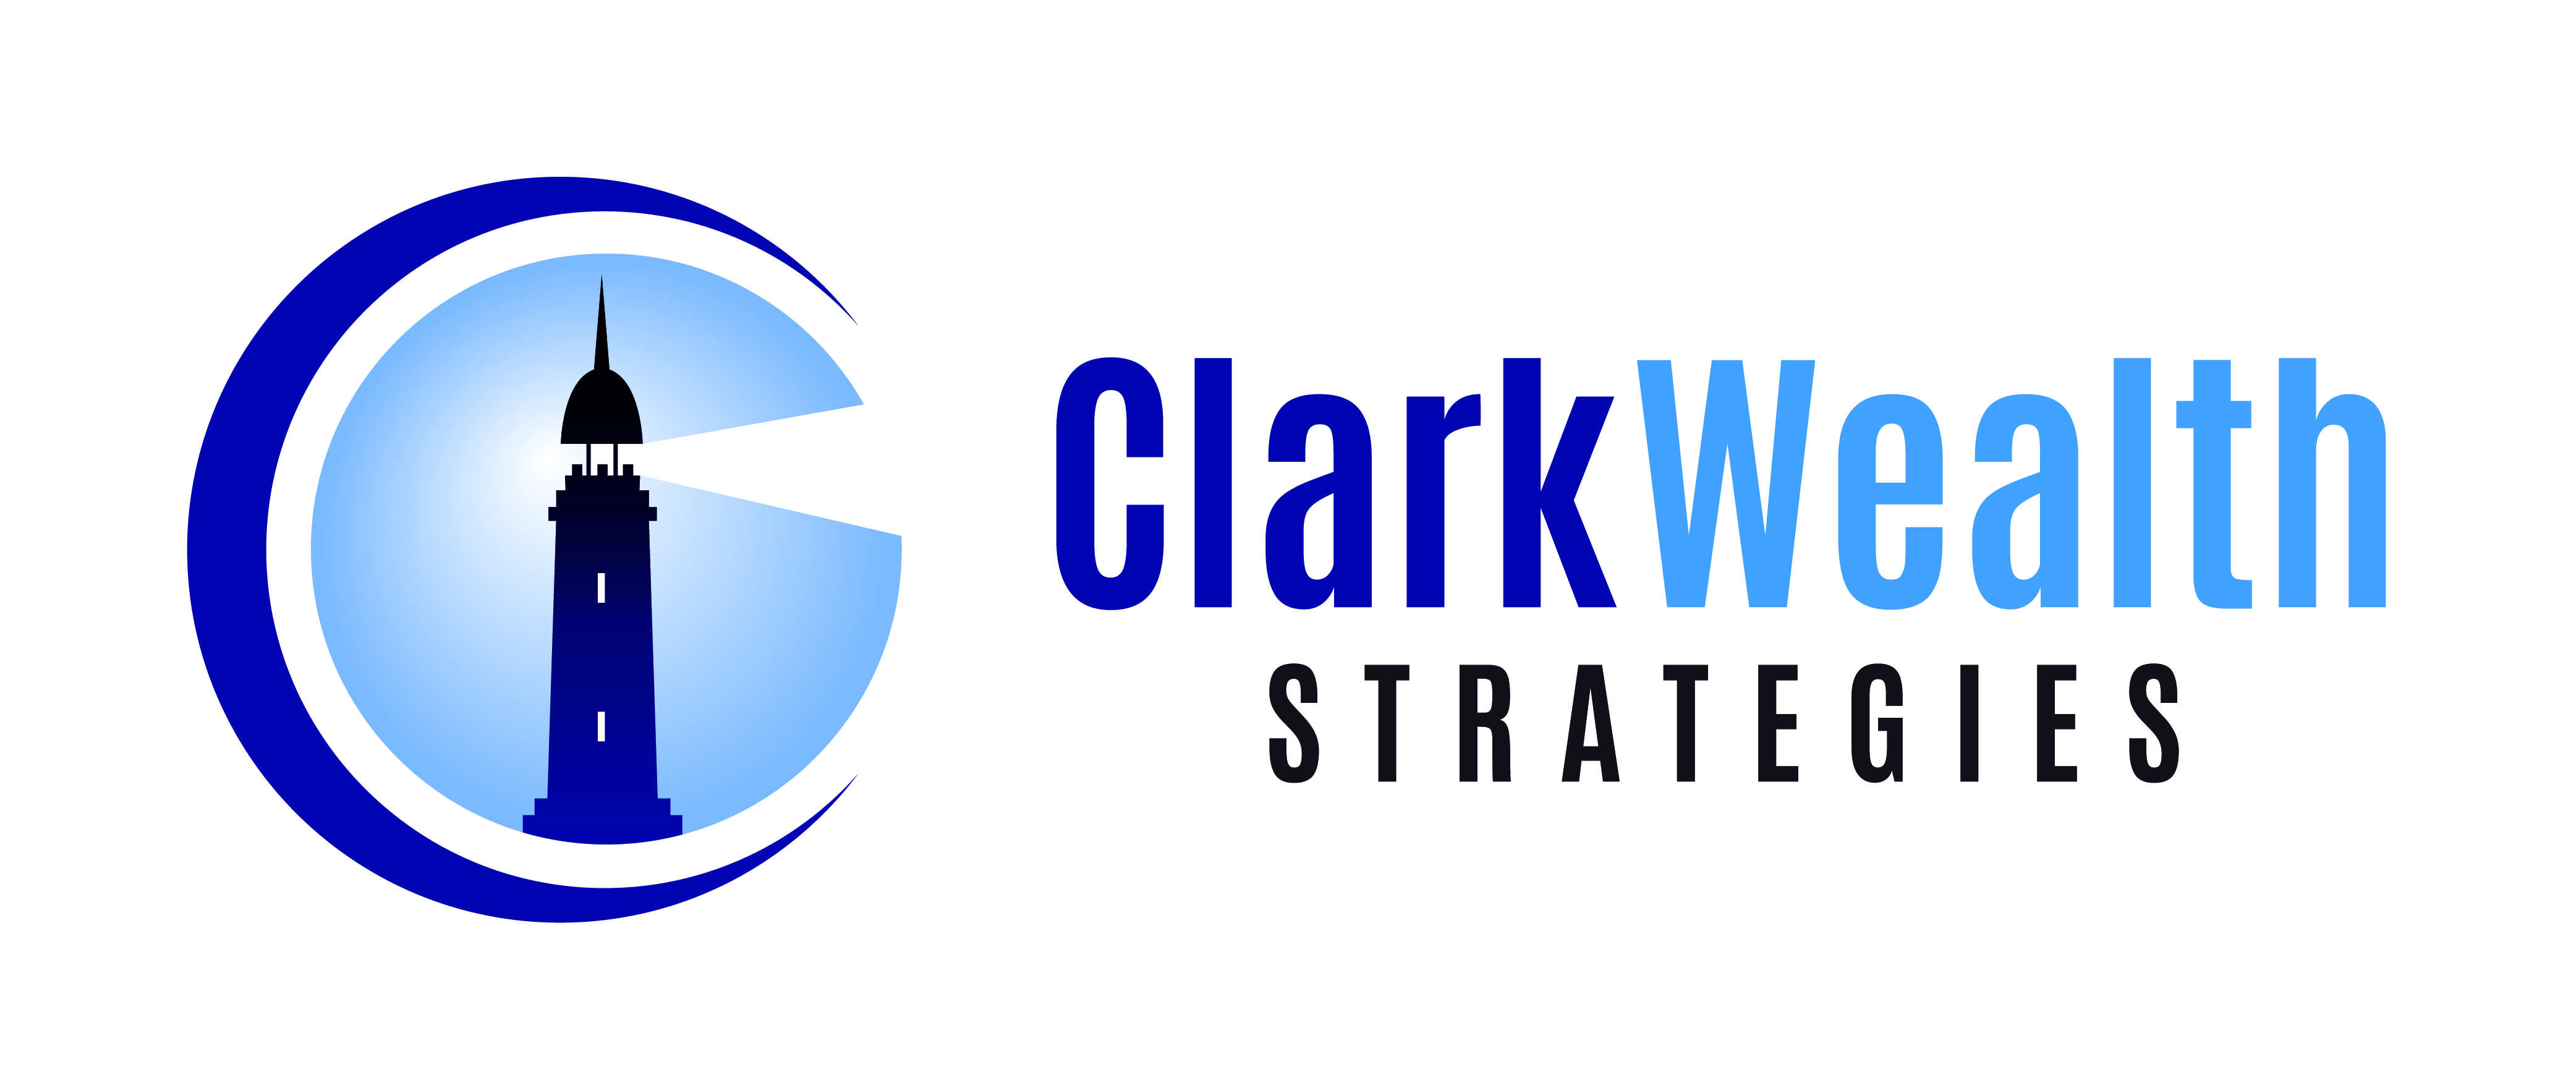 Clark_Wealth_Strategies-01